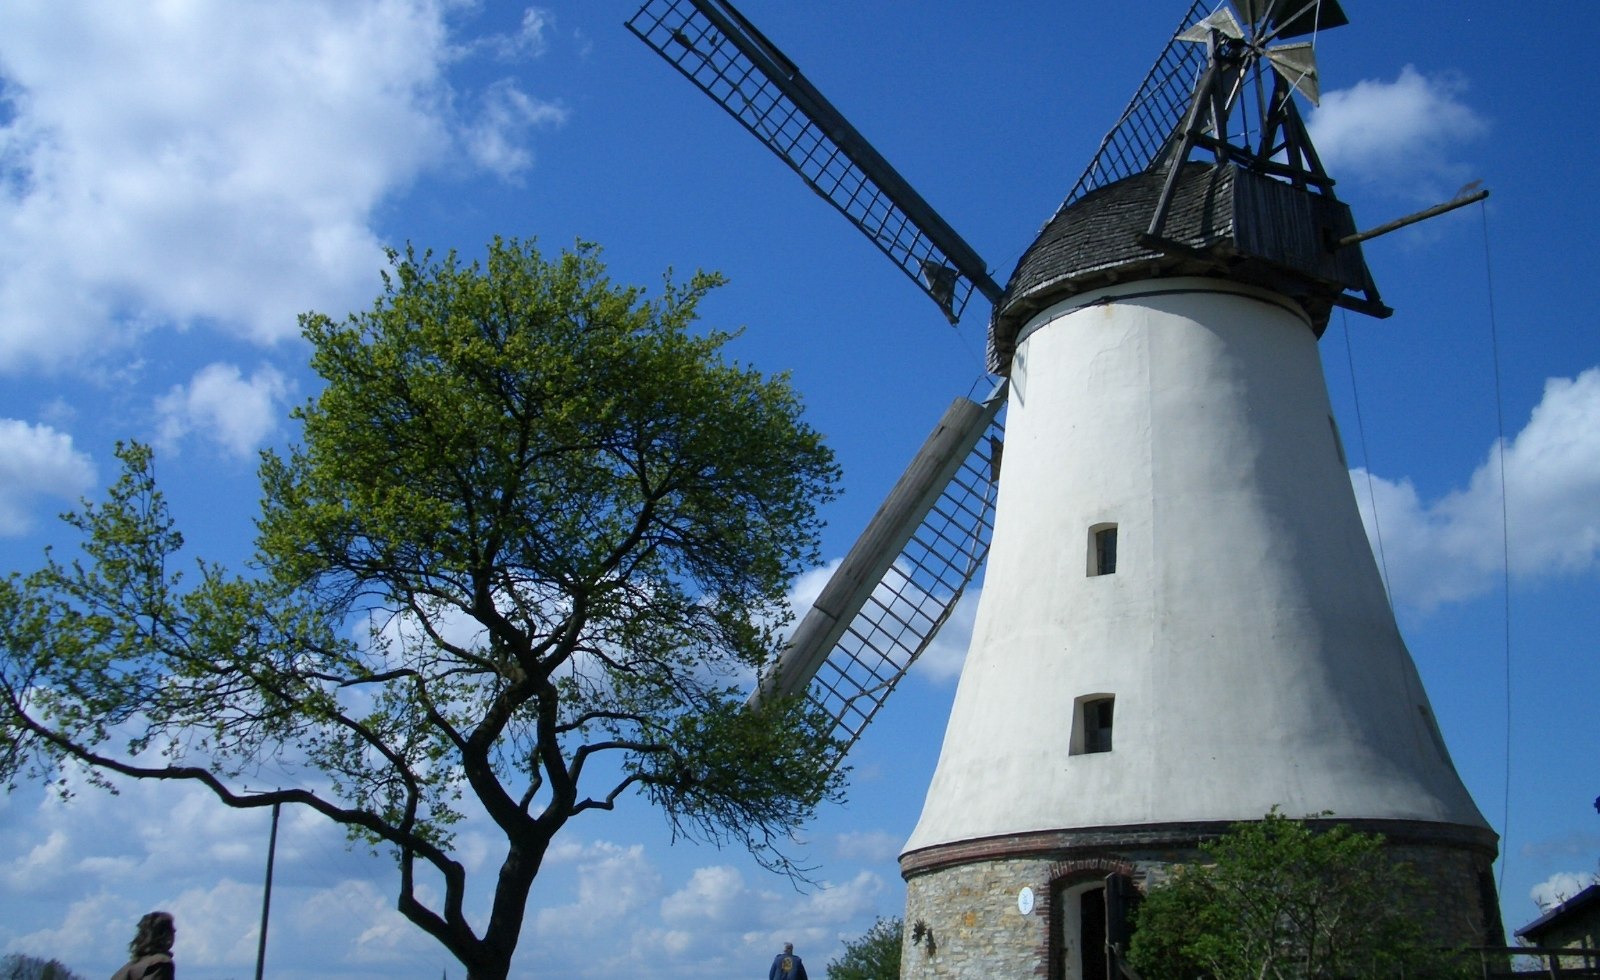 Die Windmühle Lechtingen ist eine unter Denkmalschutz stehende Holländerwindmühle in Wallenhorst in Niedersachsen, © Osnabrücker Land / Franz Middendorf